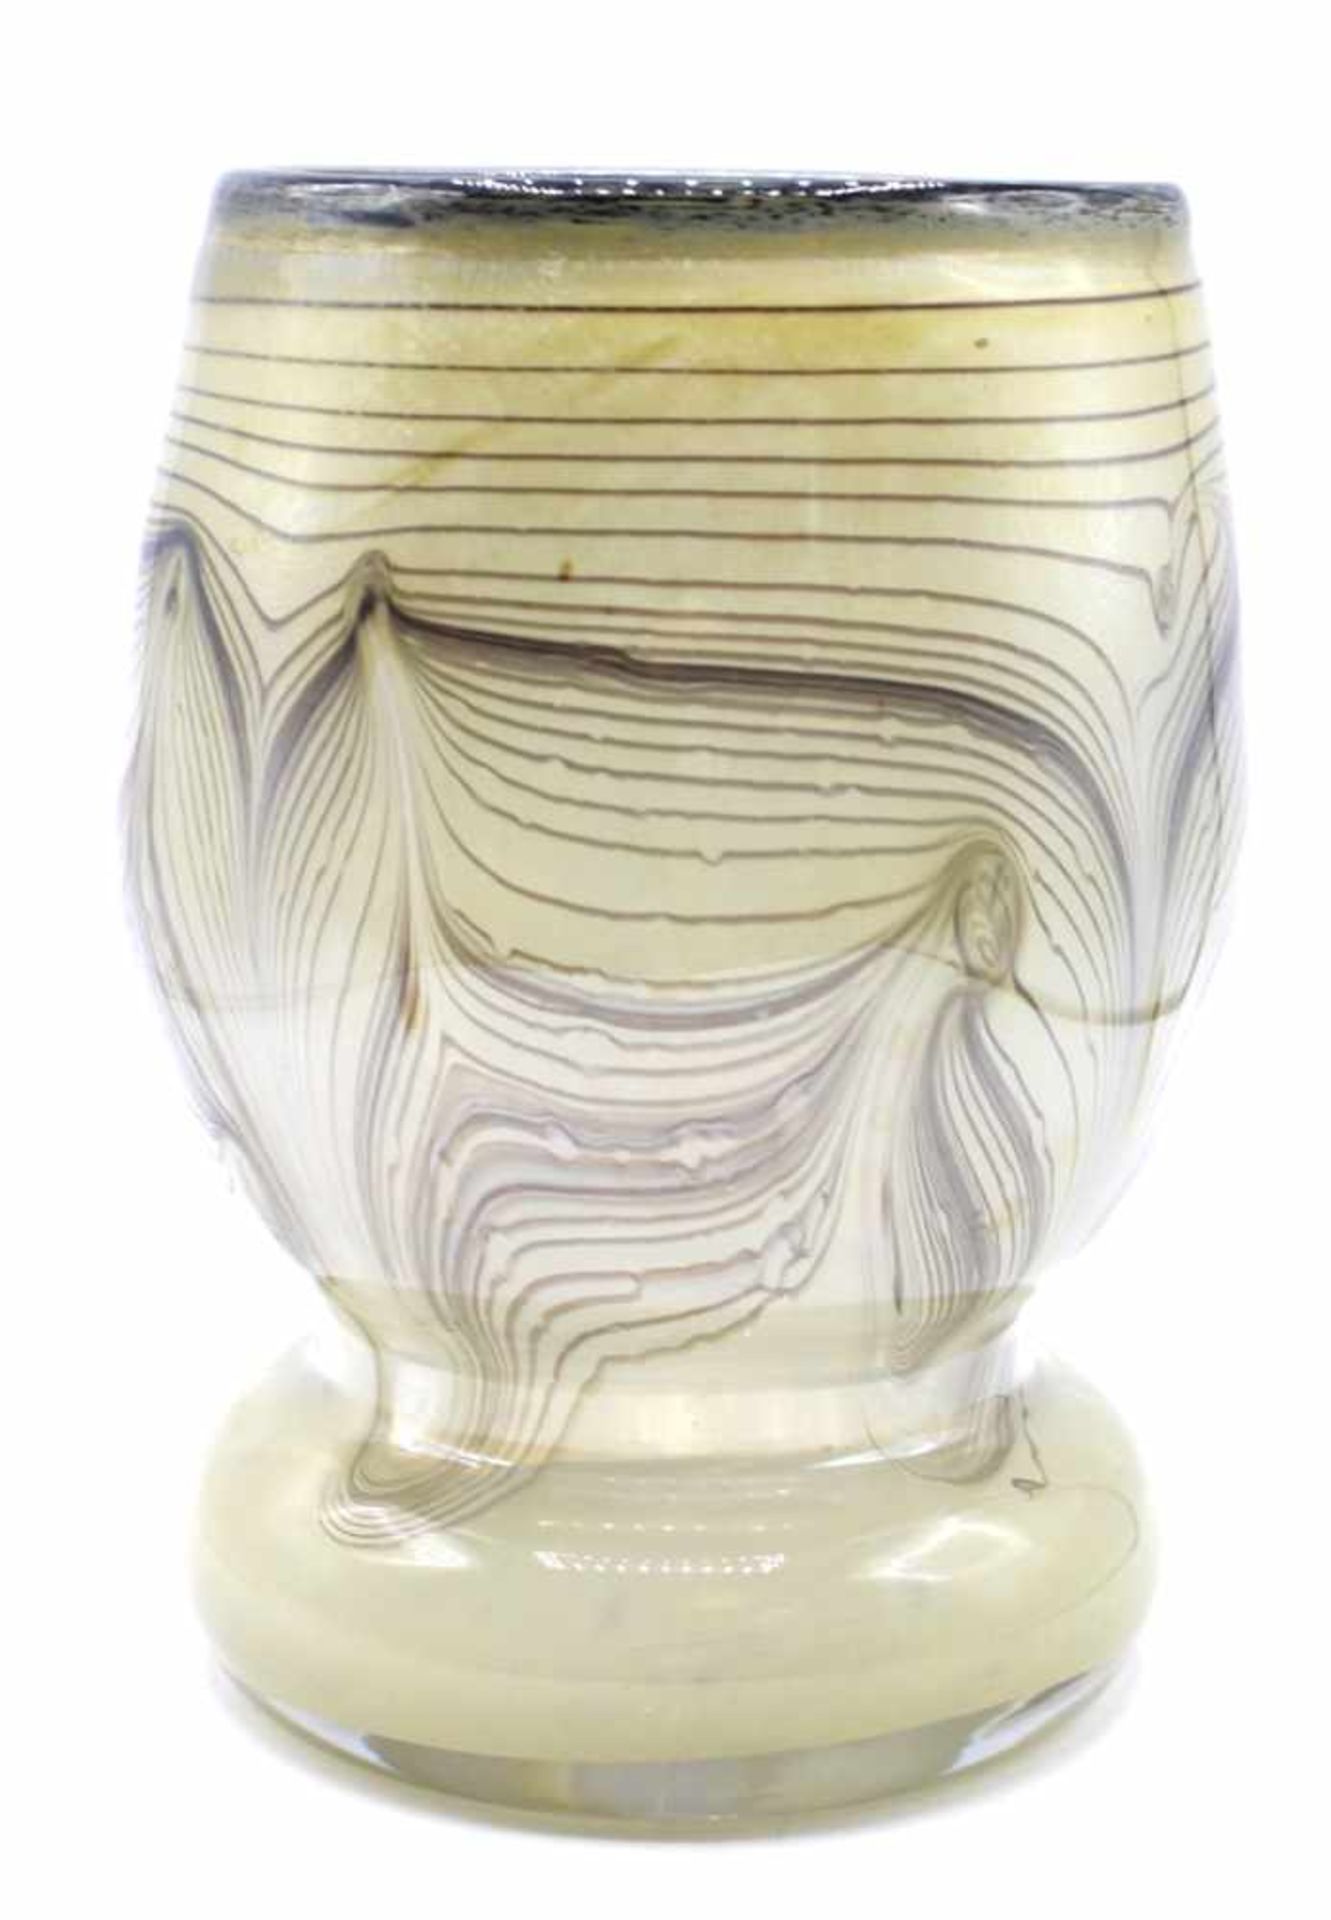 Vase - Glashütte Eisch (Frauenau) signiert Eisch und datiert 82, farbloses Glas mit